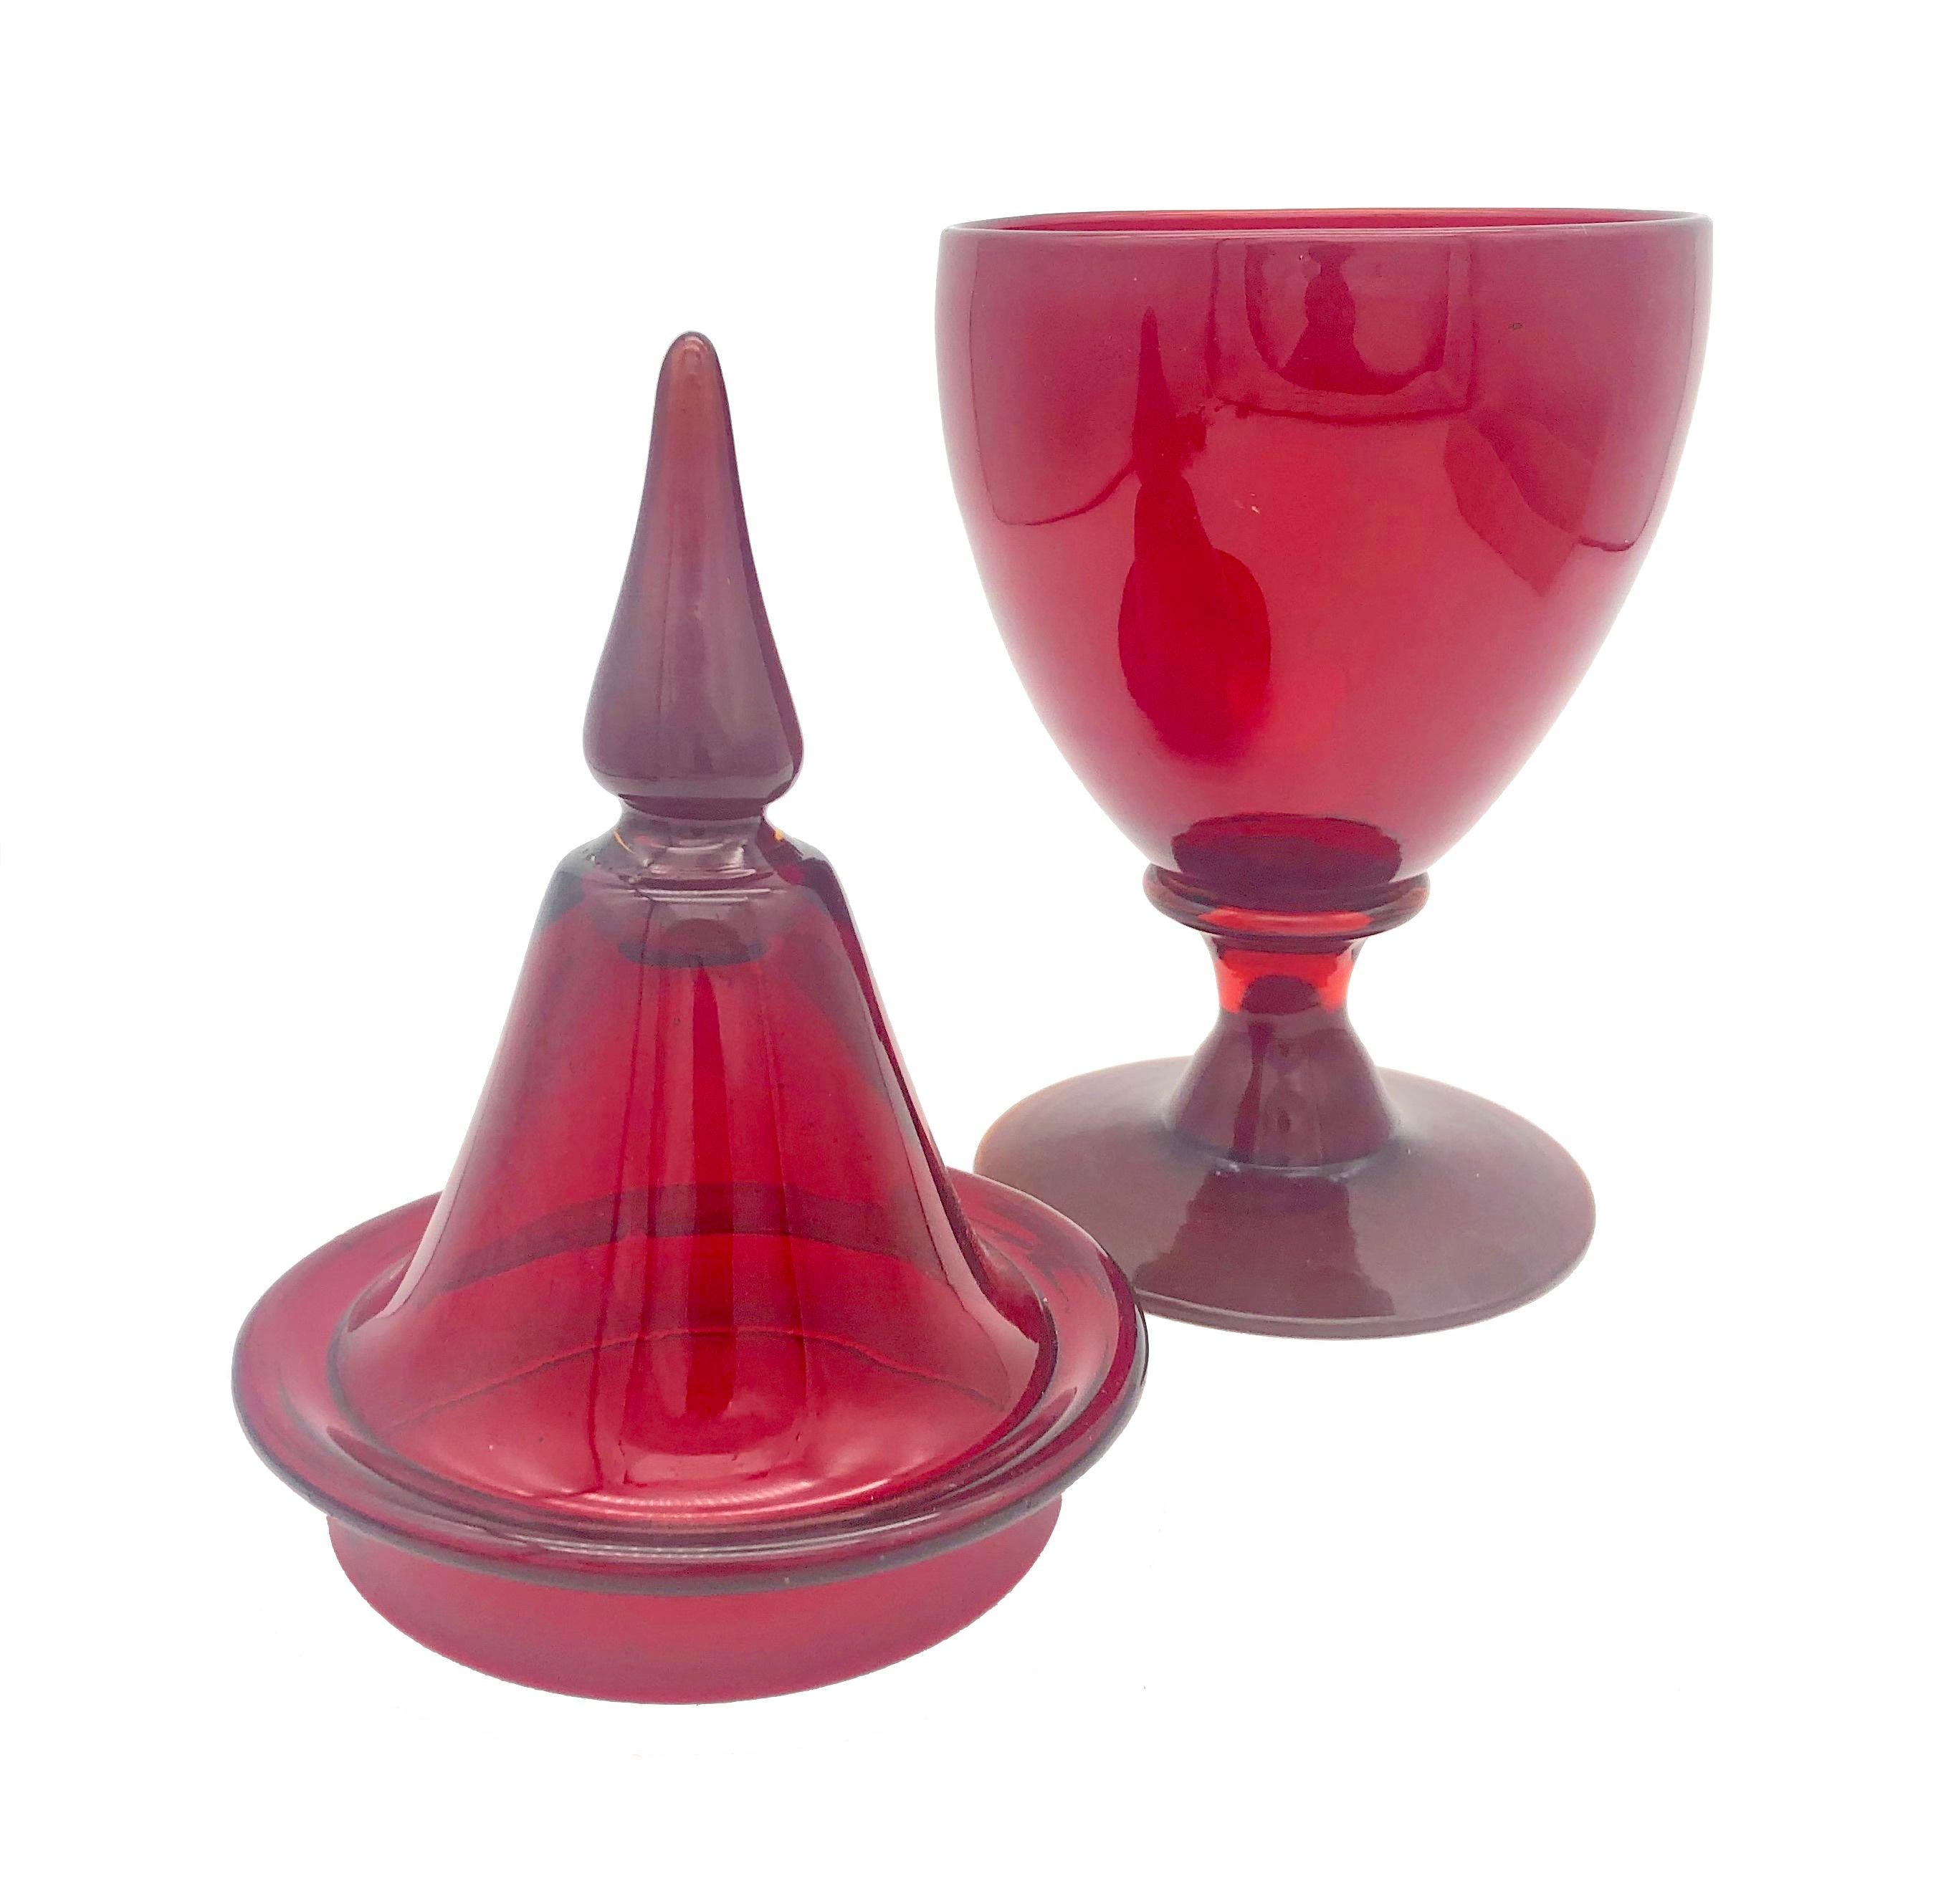 Dieses intensiv rote Glasgefäß mit seinem ornamentalen Deckel wurde Mitte des 20. Jahrhunderts in Frankreich mundgeblasen. Das fabelhafte Rot dieser eleganten Bonboniere verleiht jedem Tisch oder dekorativen Arrangement ein festliches Aussehen und